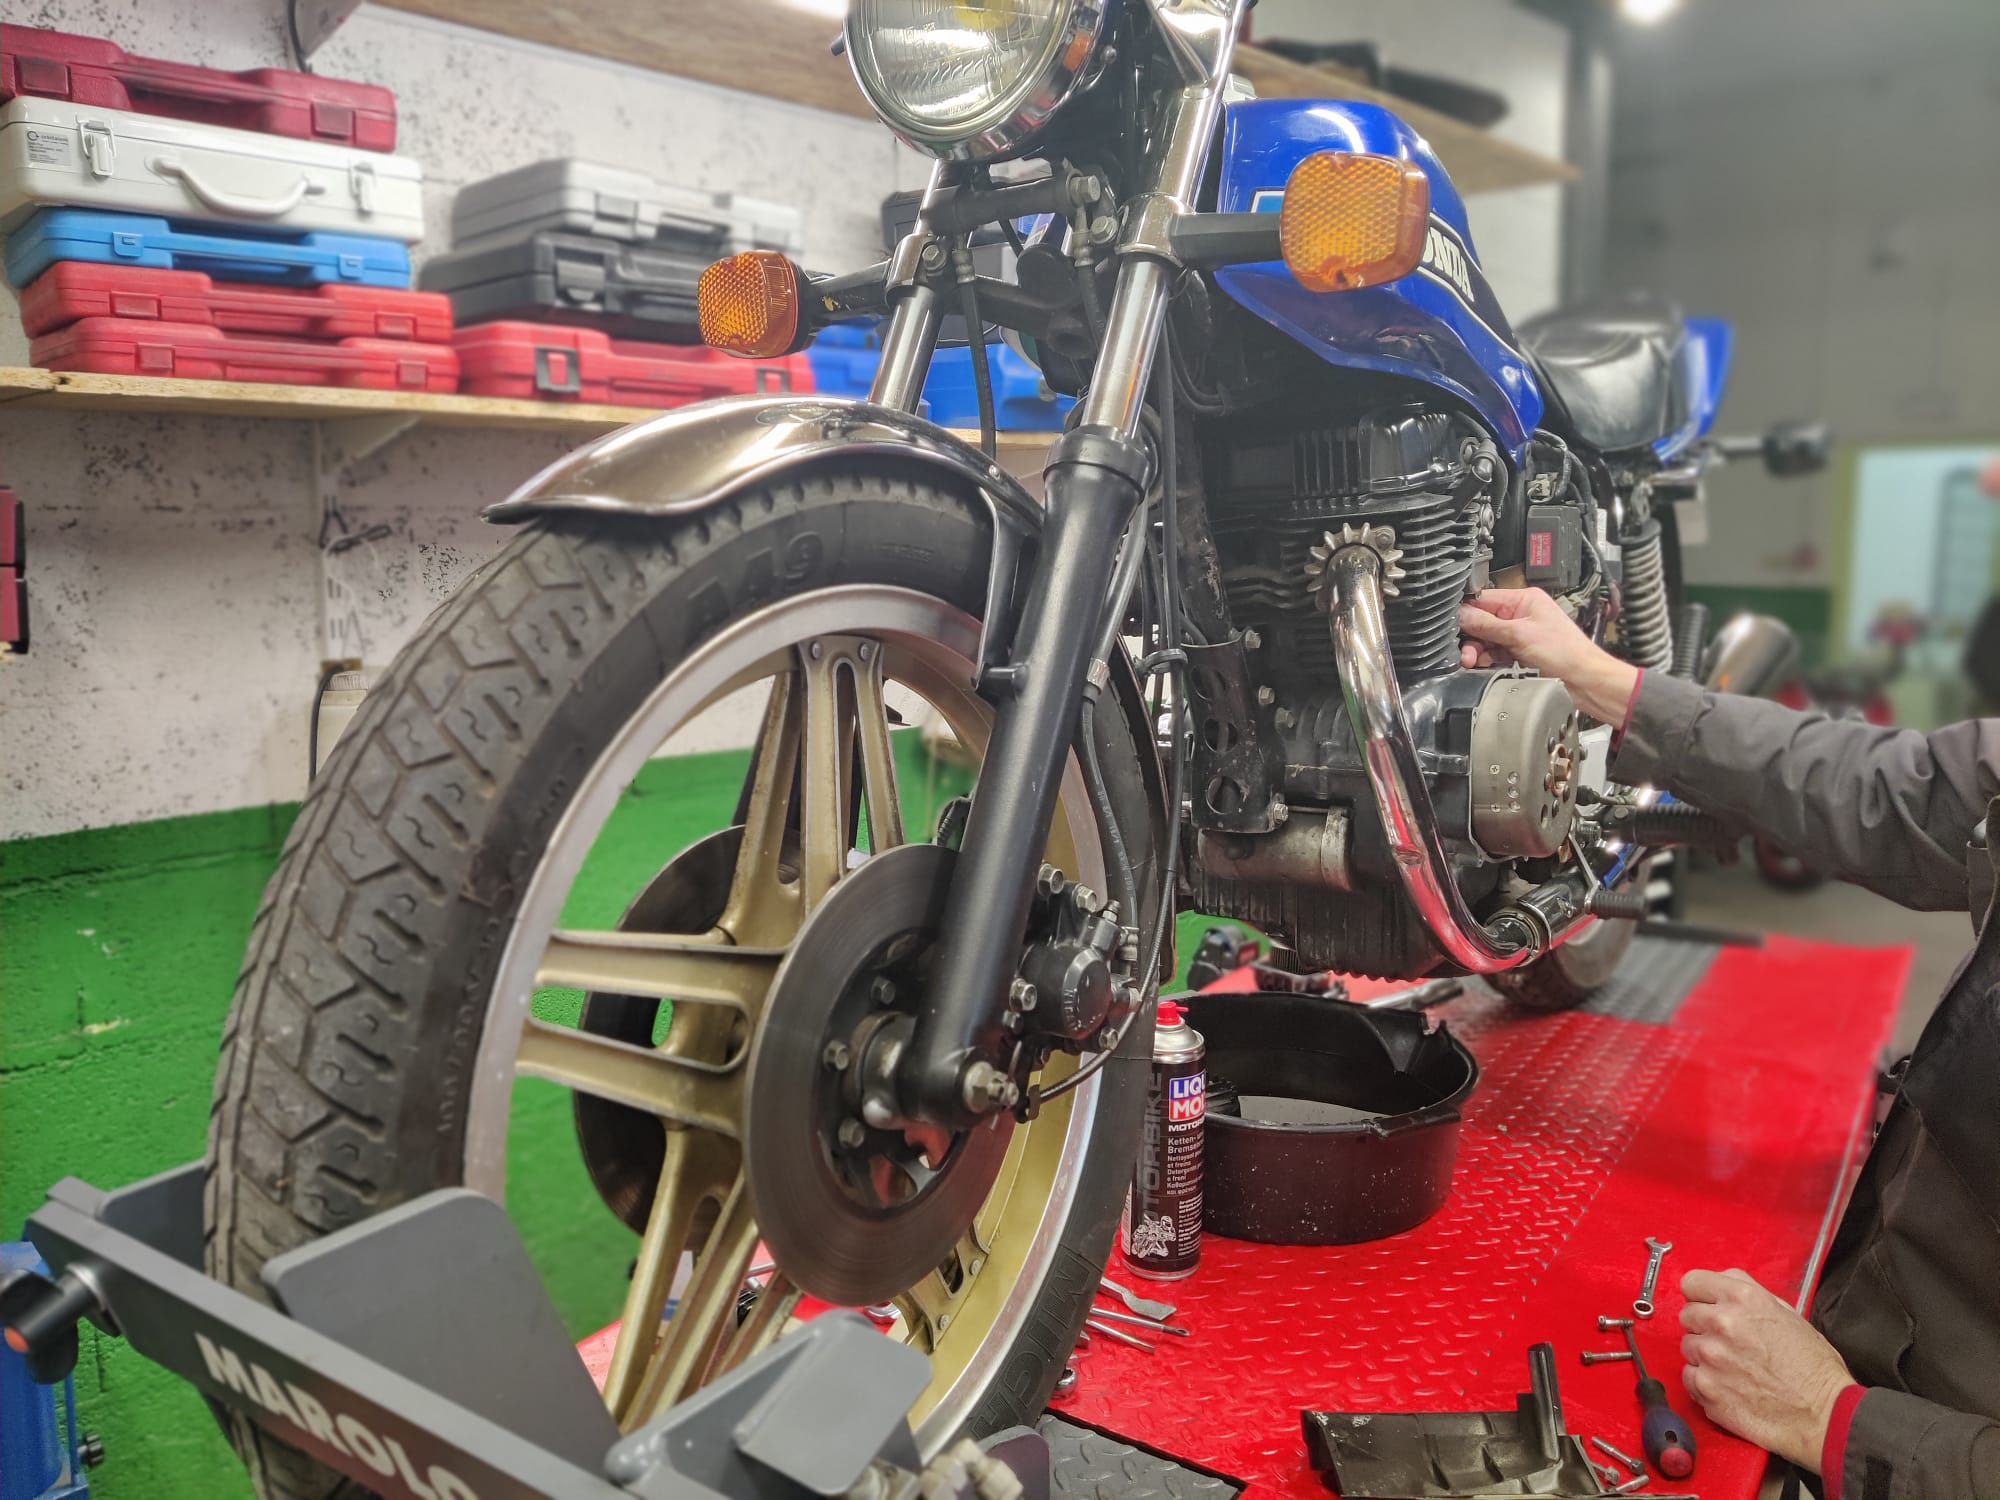 Réparation moto à Clermont Ferrand